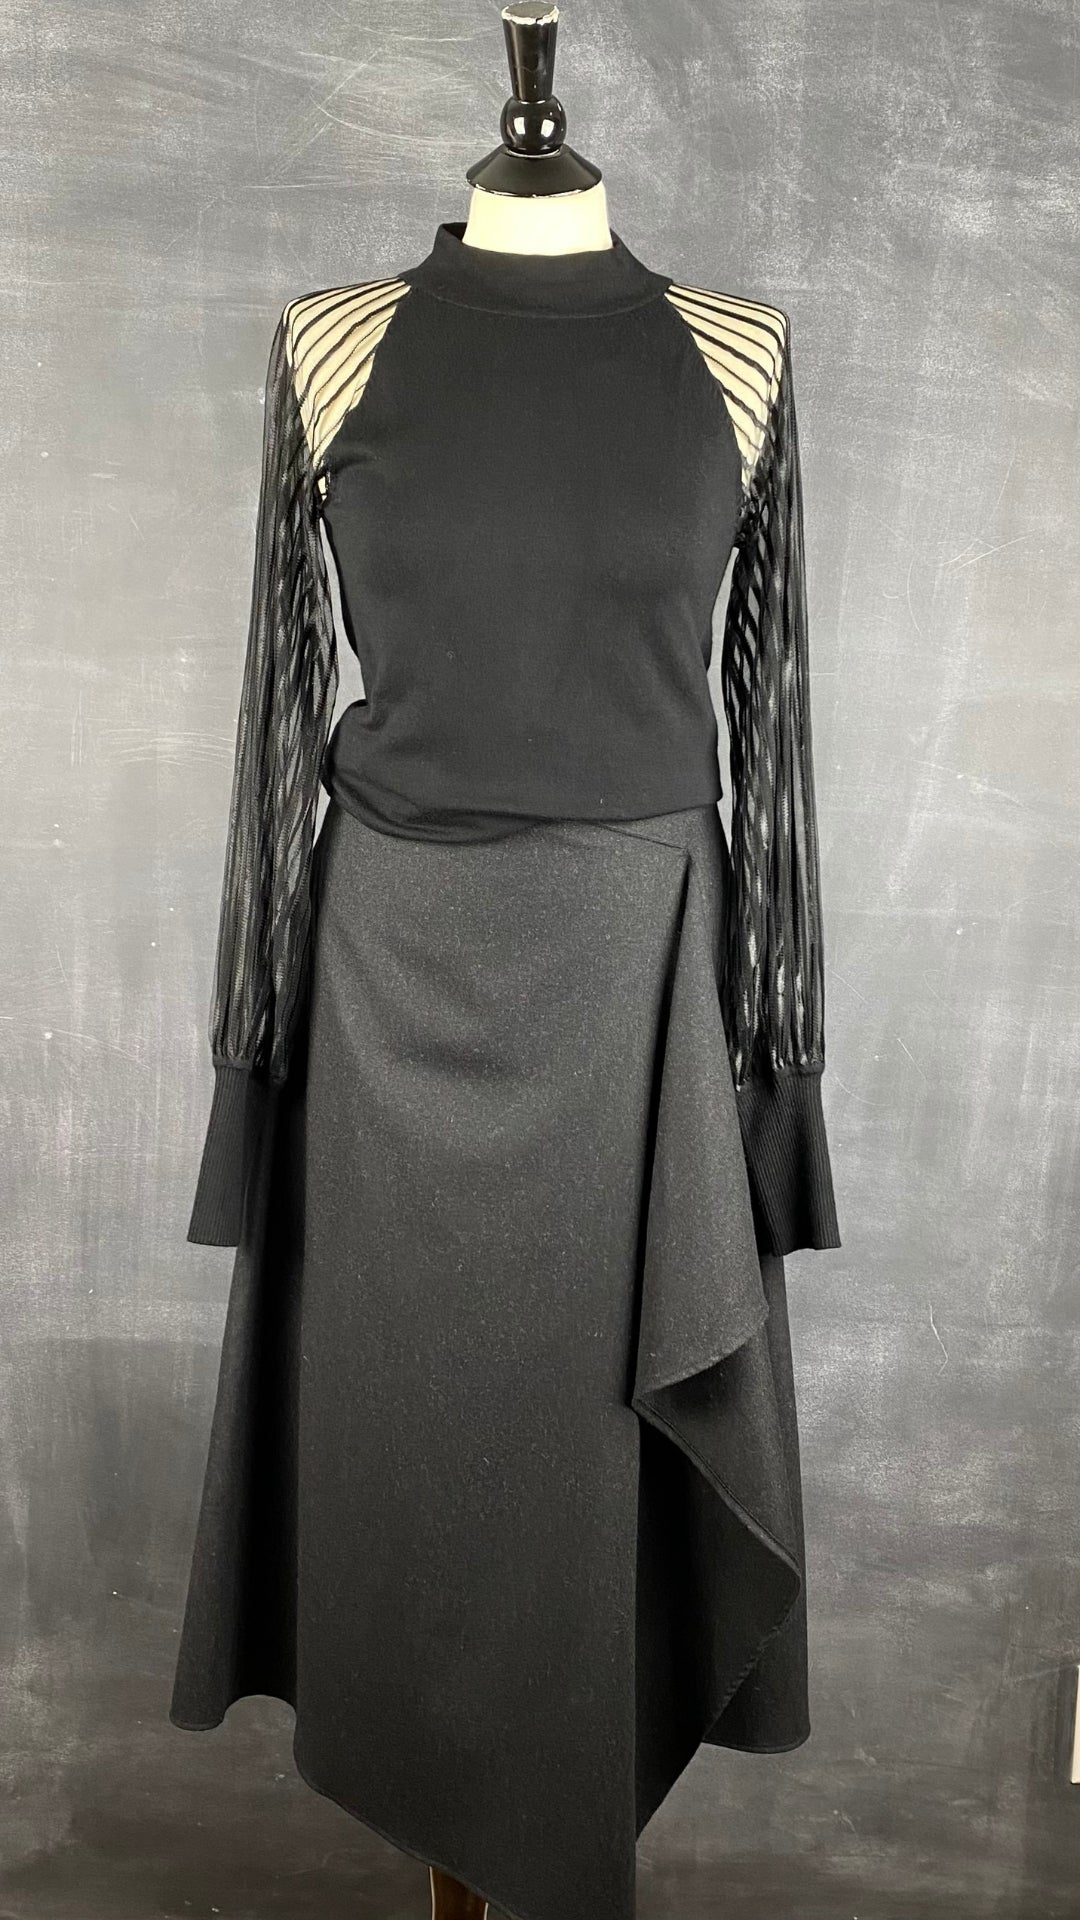 Jupe longue noire chiné en lainage Massimo Dutti, taille small. Vue de l'agencement avec le haut à manches transparentes.